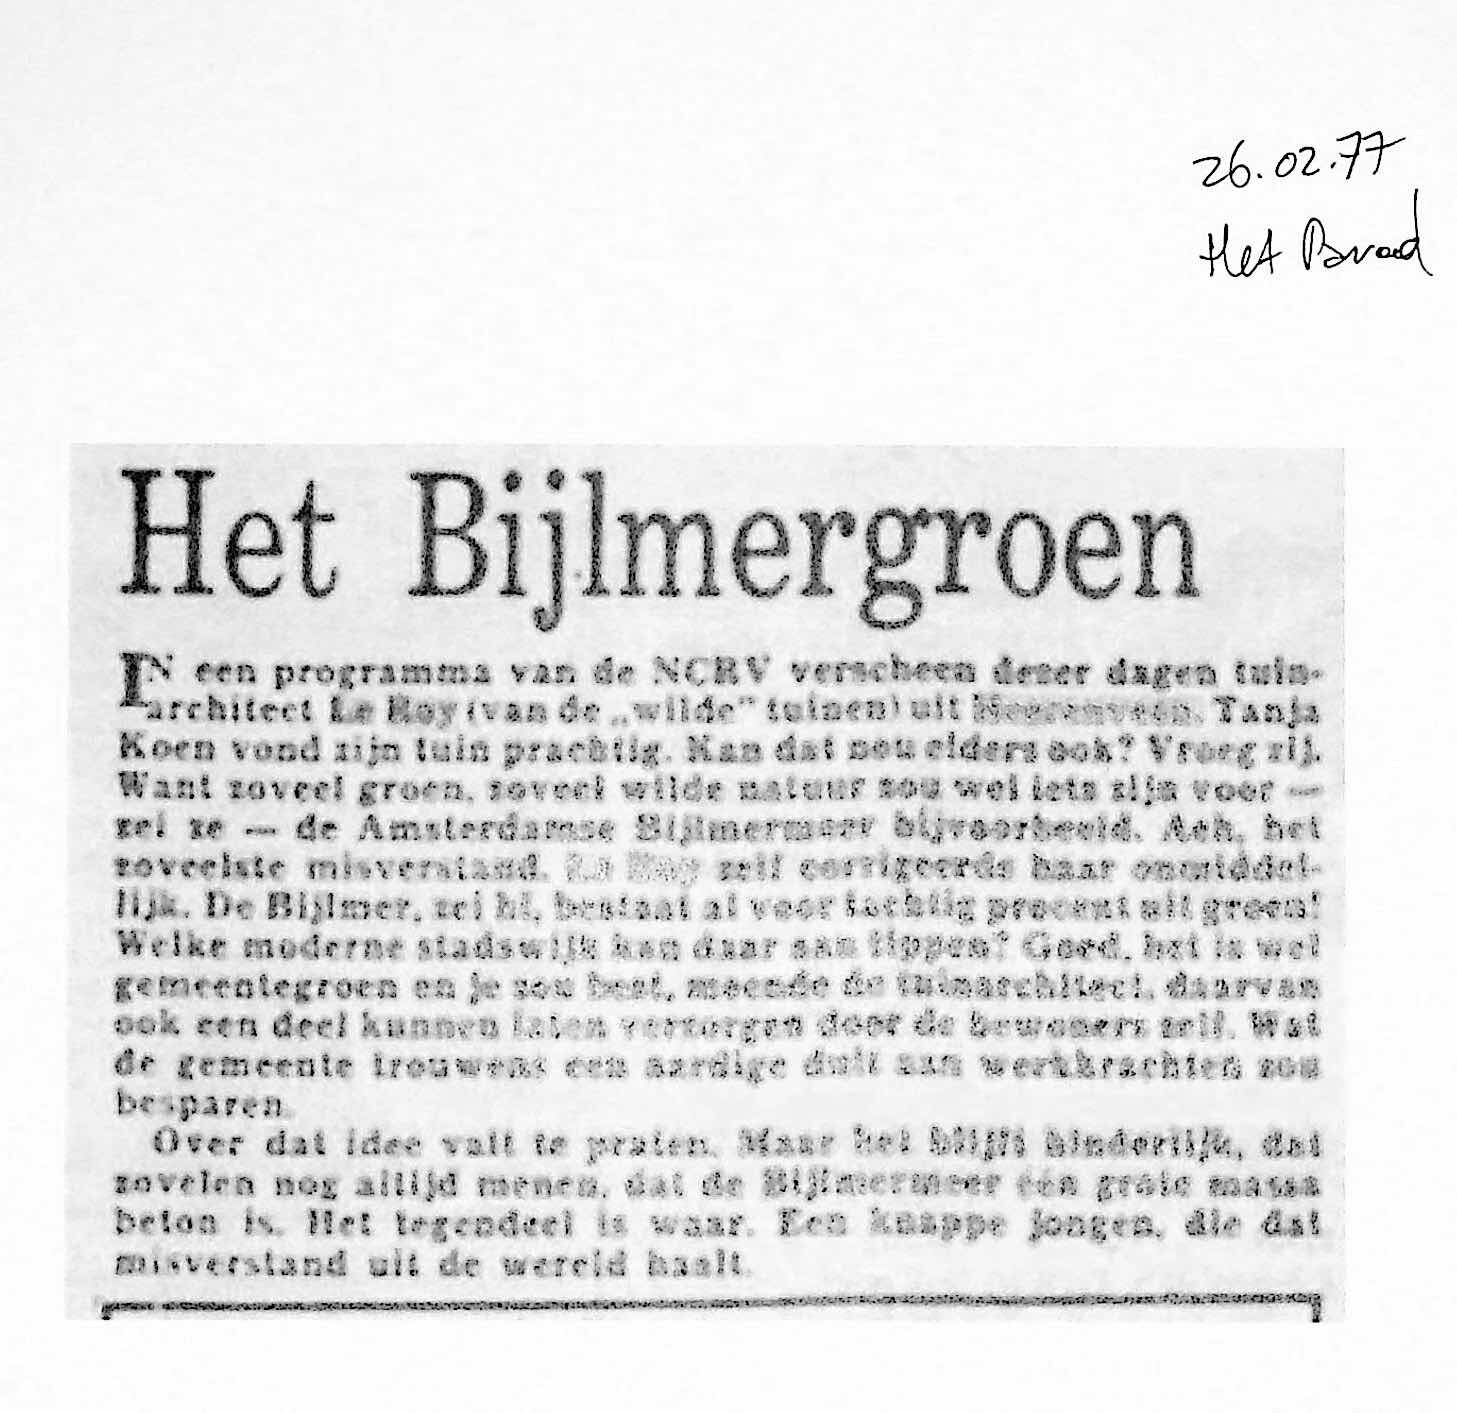 19770226_PAROOL_Bijlmergroen.jpg